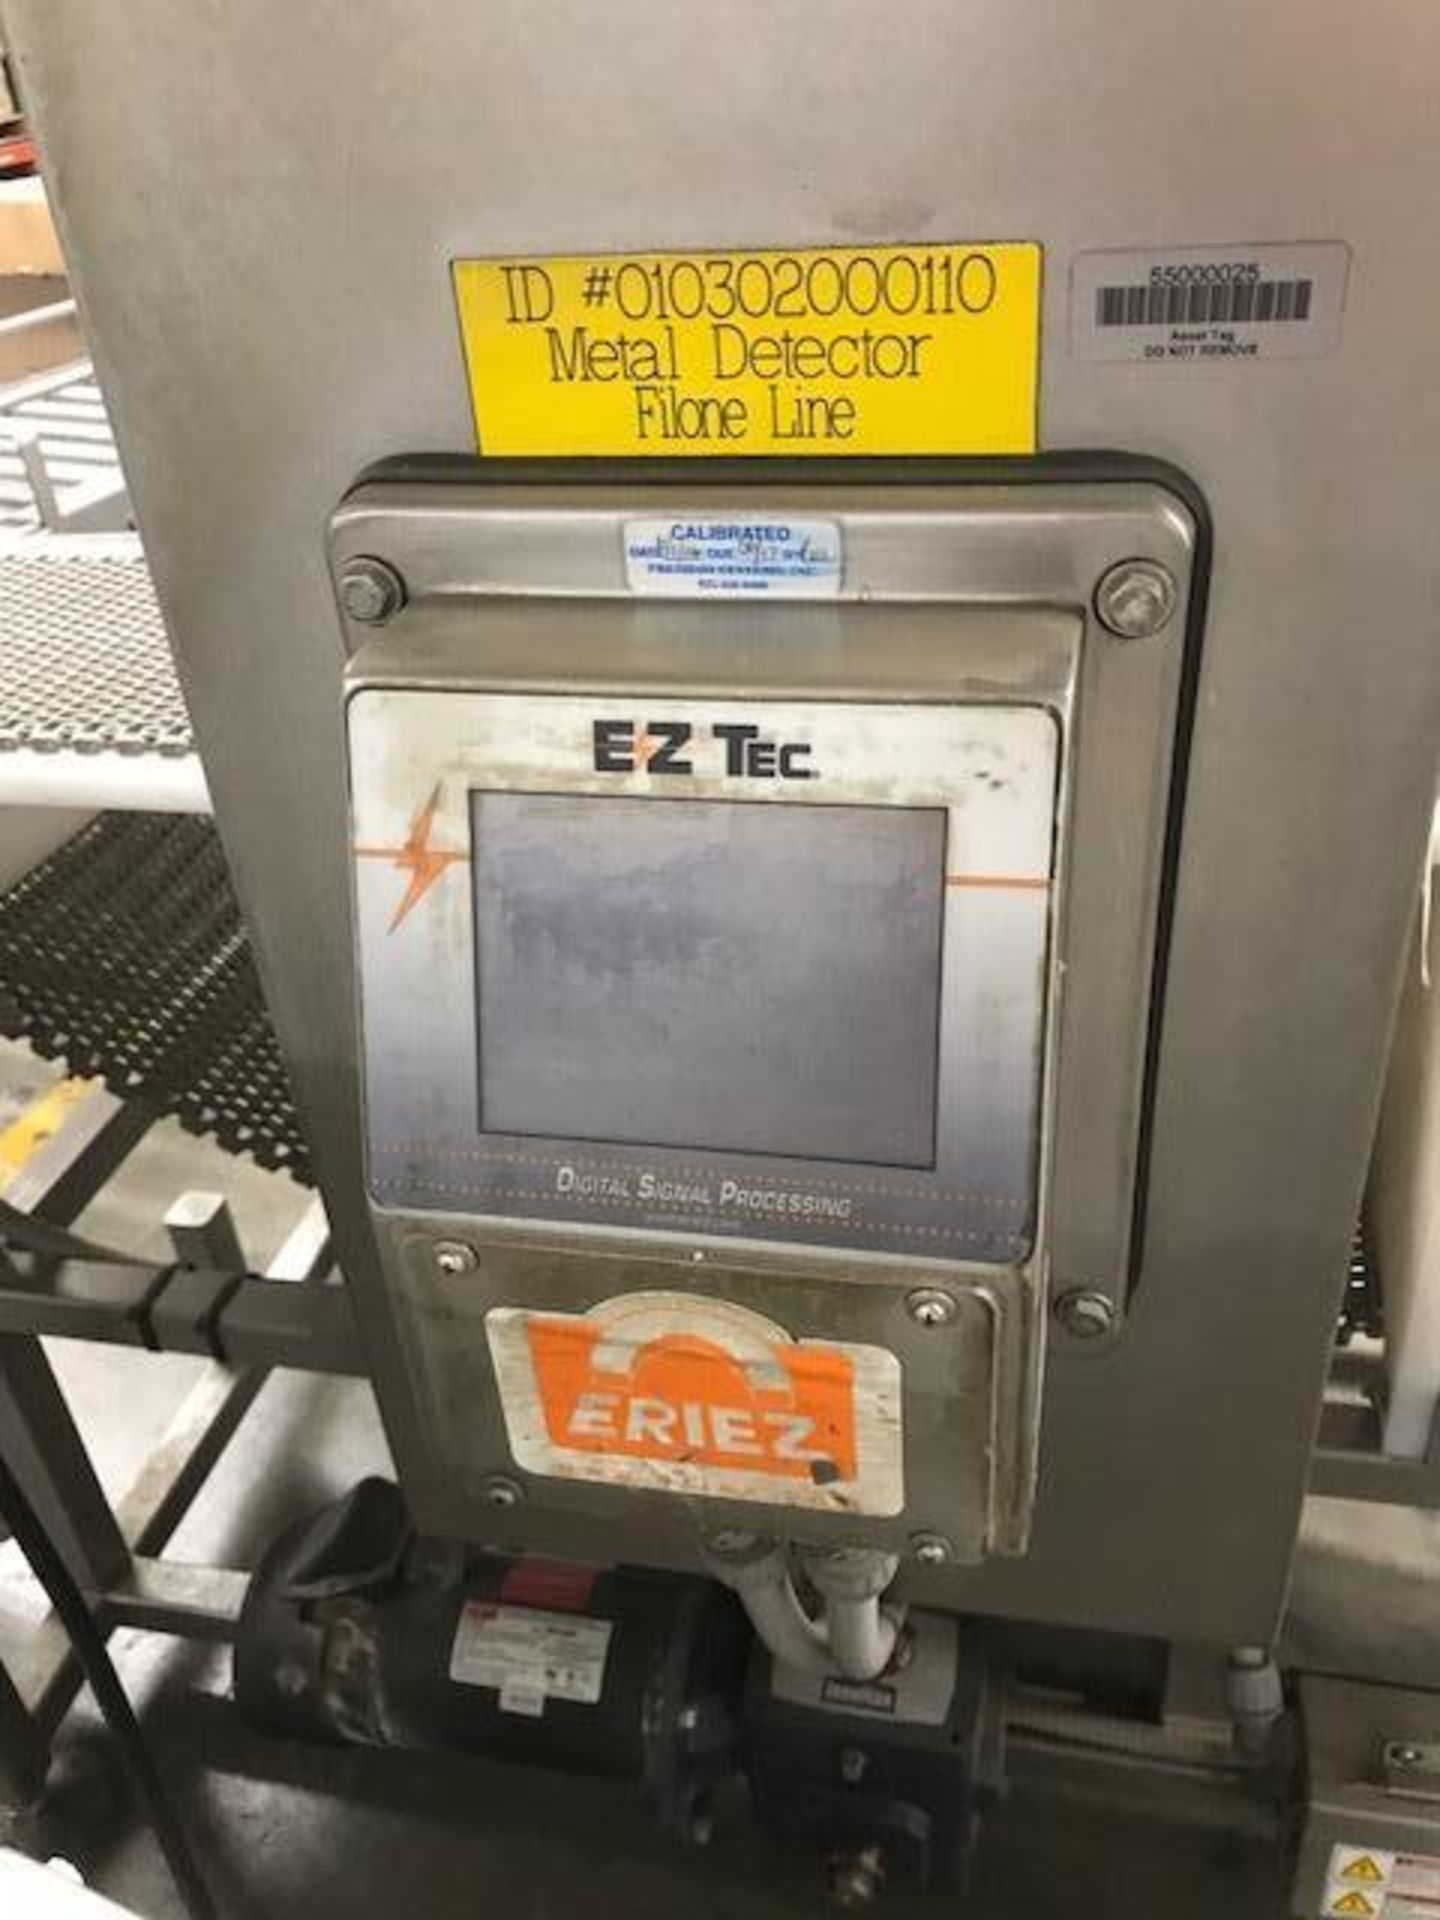 Eriez metal detector {Located in Lodi, CA} - Image 2 of 4